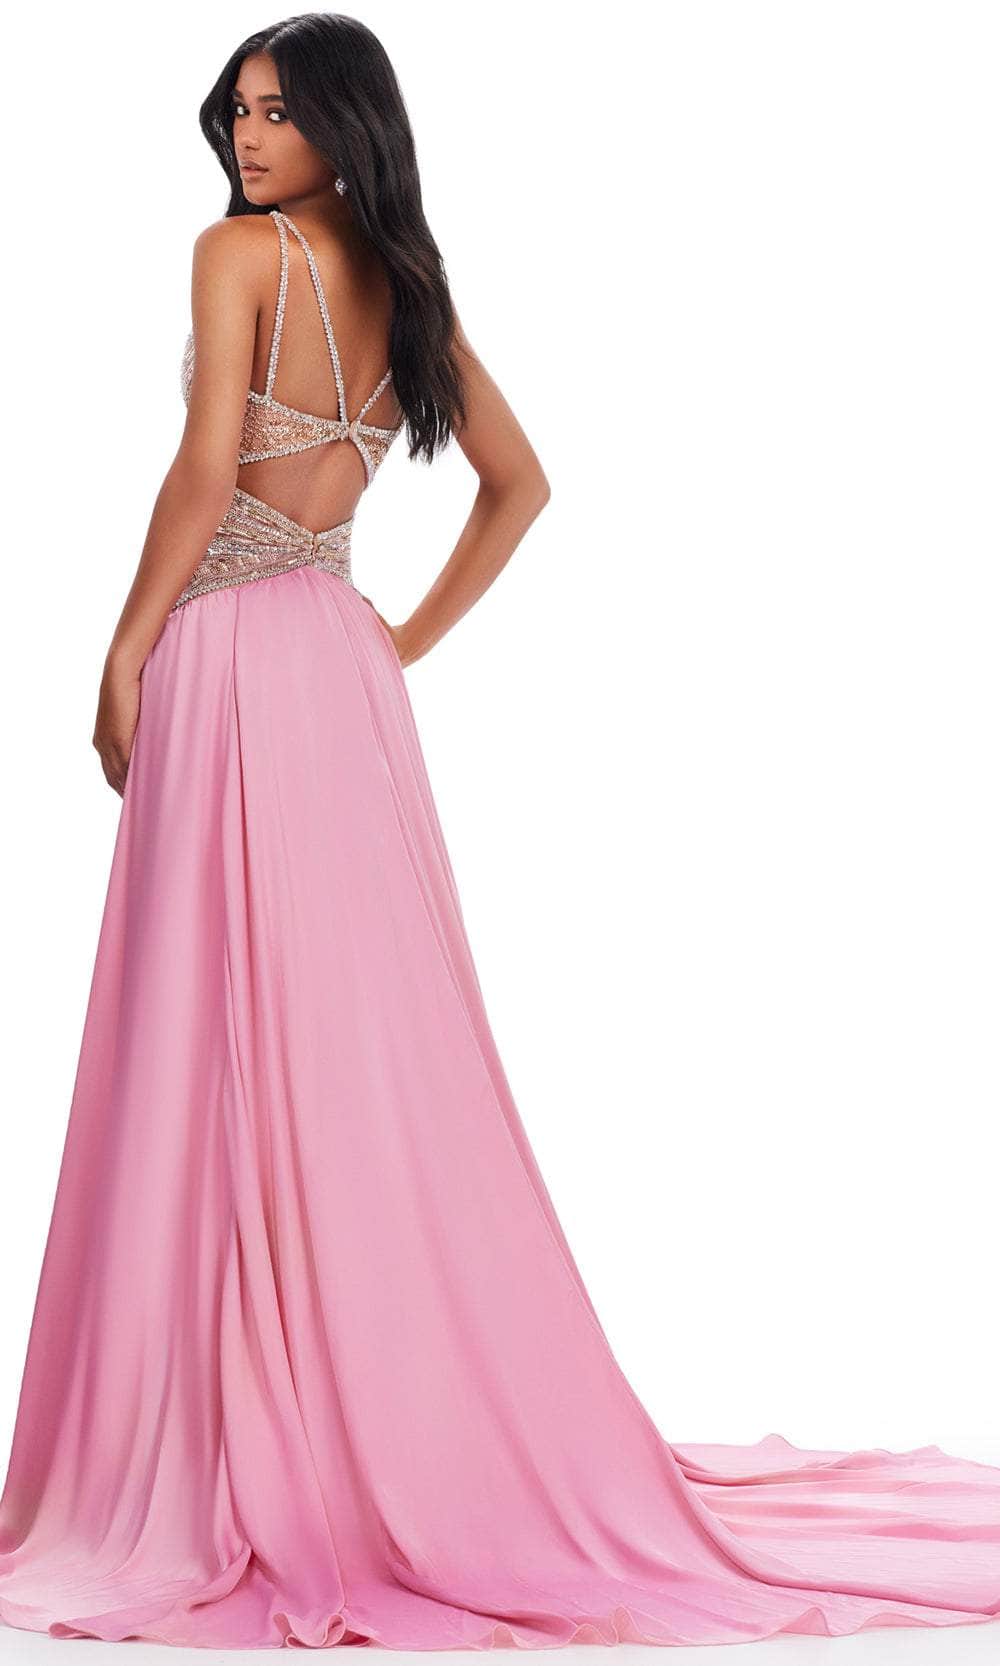 Ashley Lauren 11455 - Halter Sequin Gown Prom Dresses